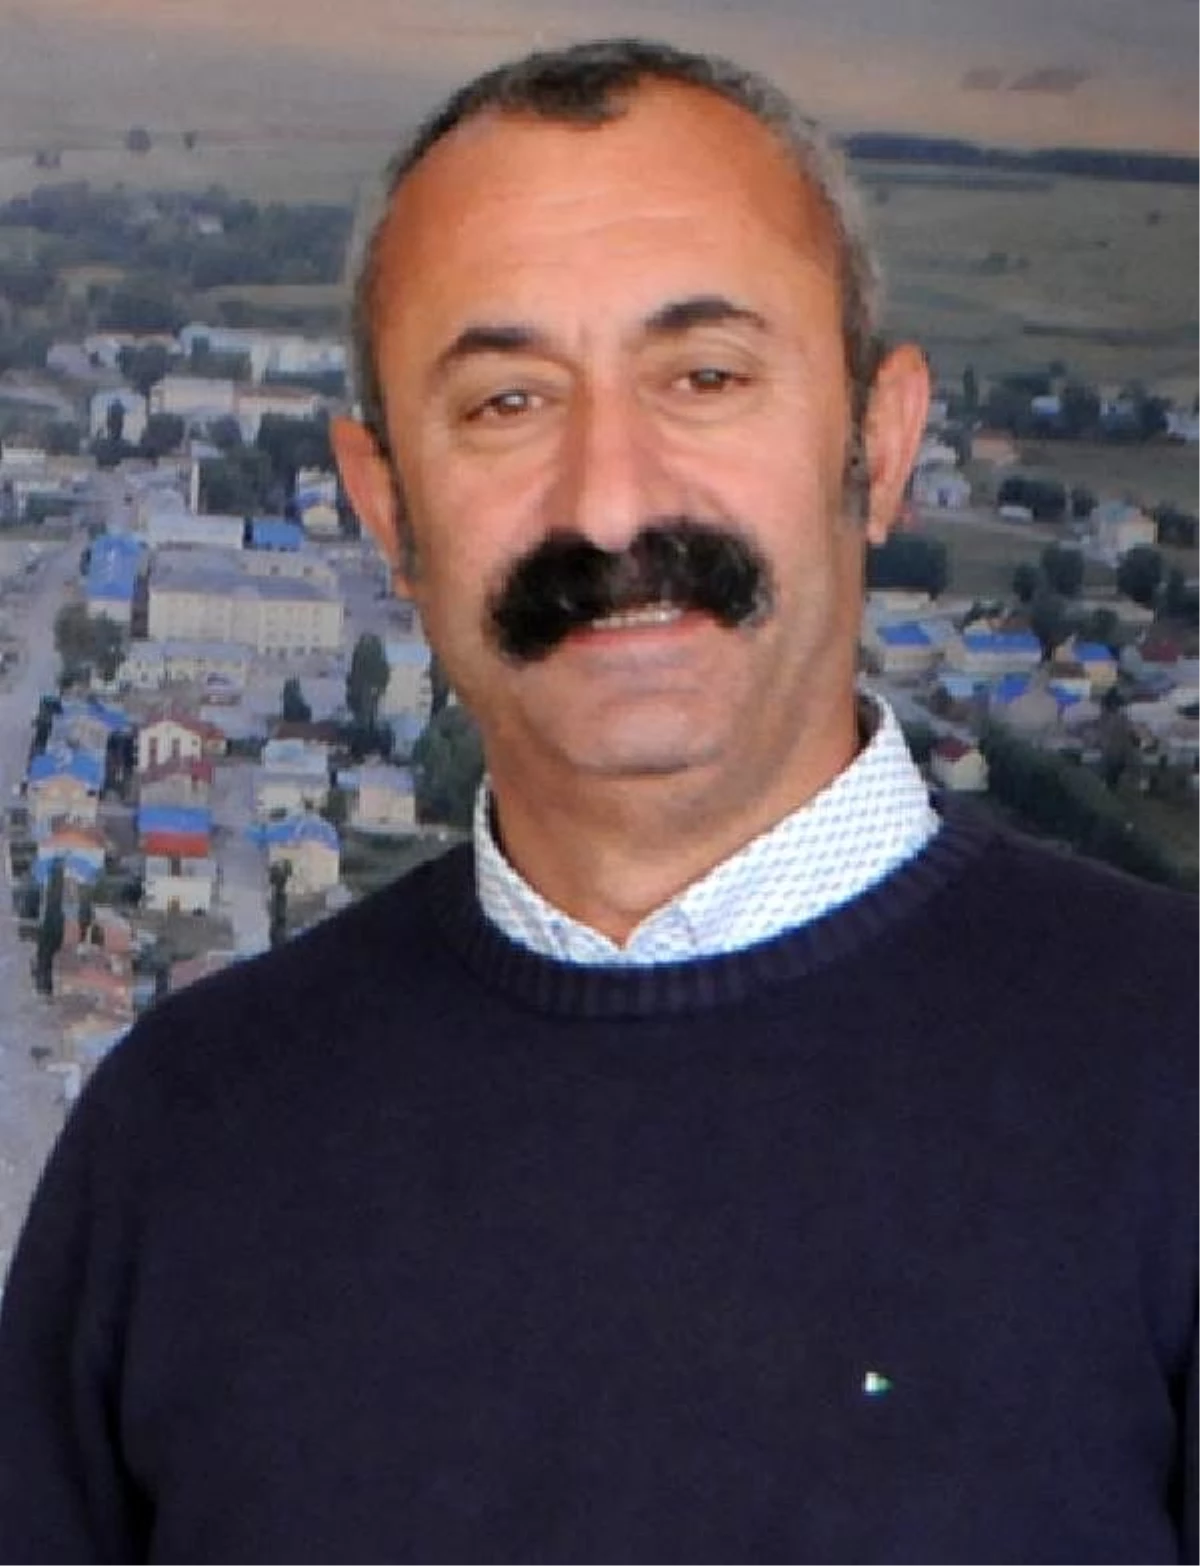 Tunceli Belediye Başkanı Maçoğlu, ifadeye çağrıldı